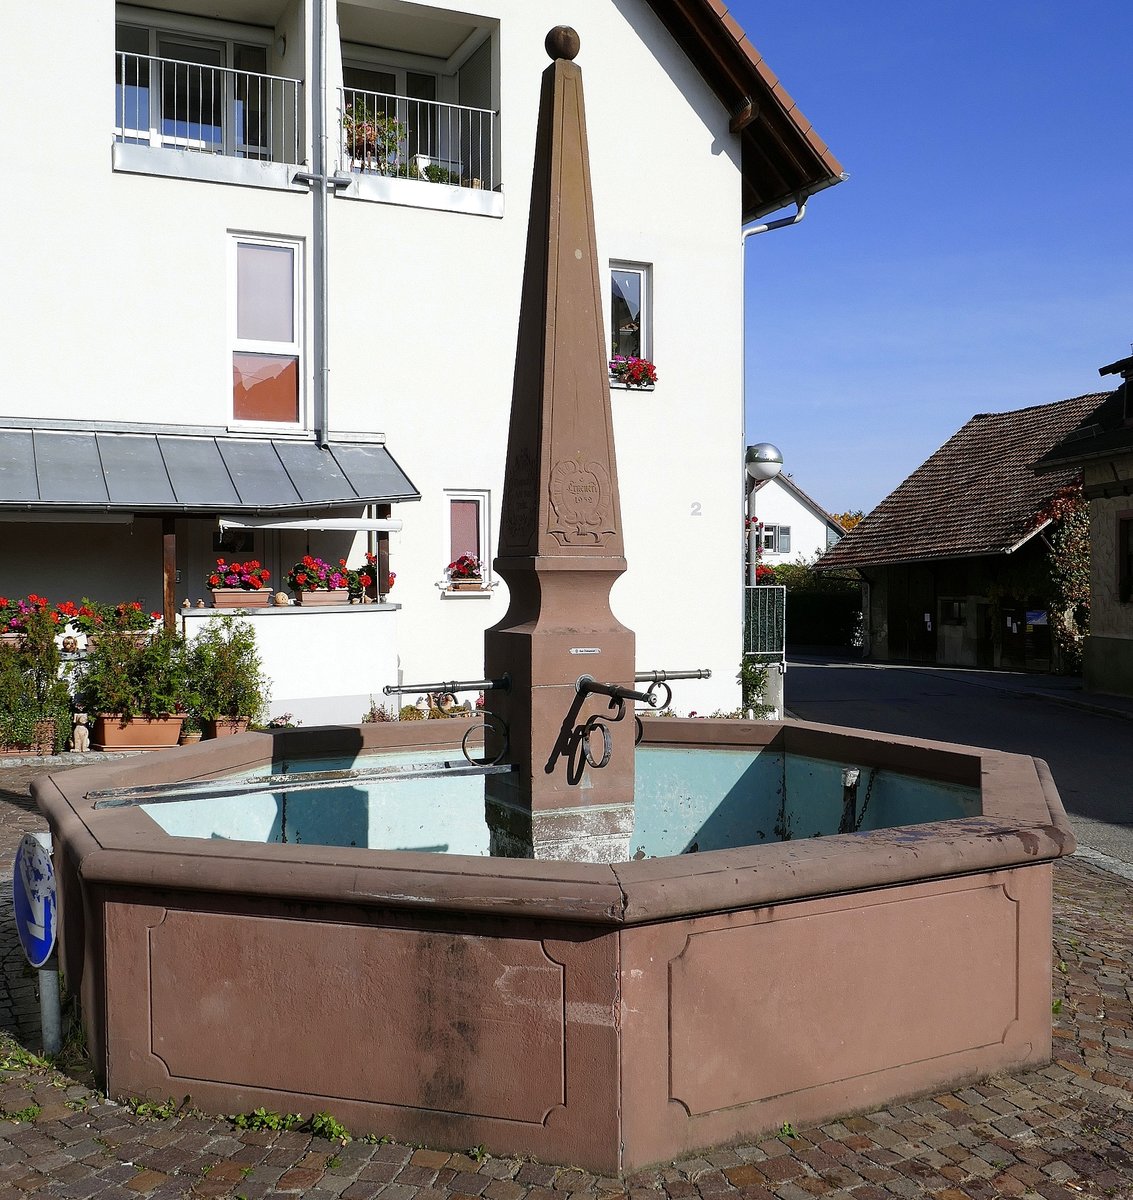 Tllingen, der historische Dorfbrunnen, 1952 erneuert, Okt.2020